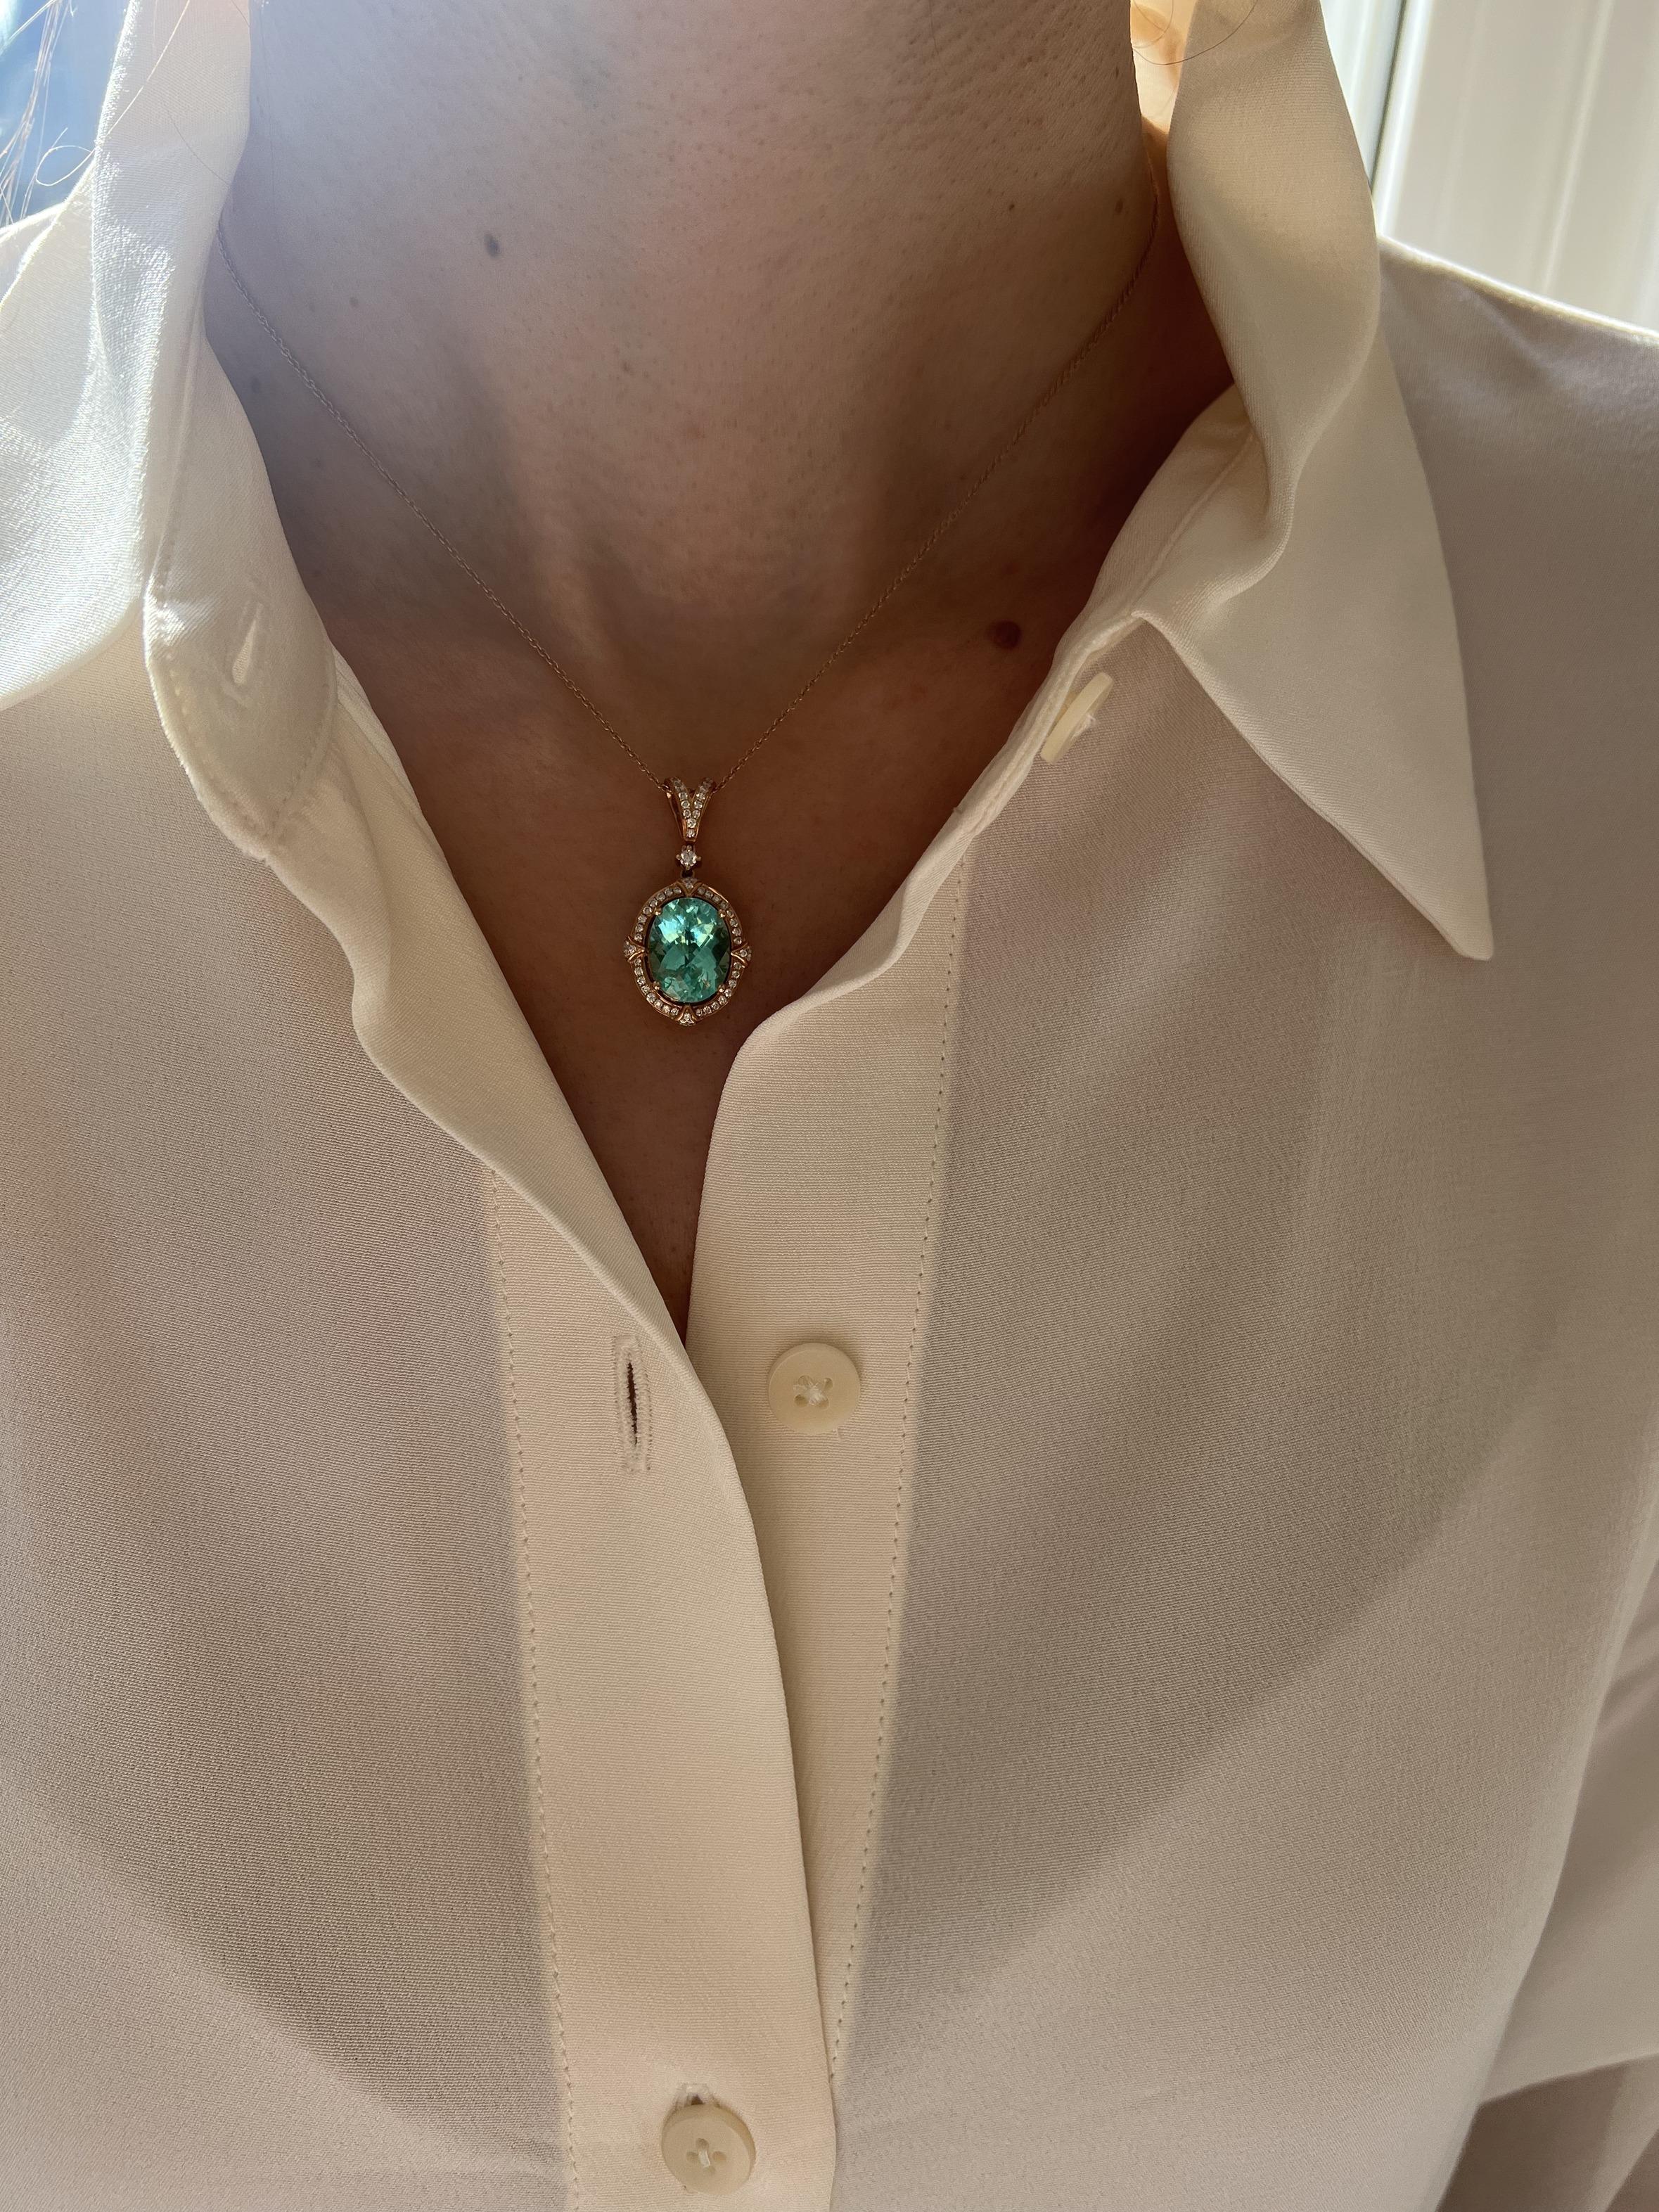 Teal Paraiba Tourmaline Diamond Halo Unique 18 Karat Rose Gold Pendant Necklace For Sale 11